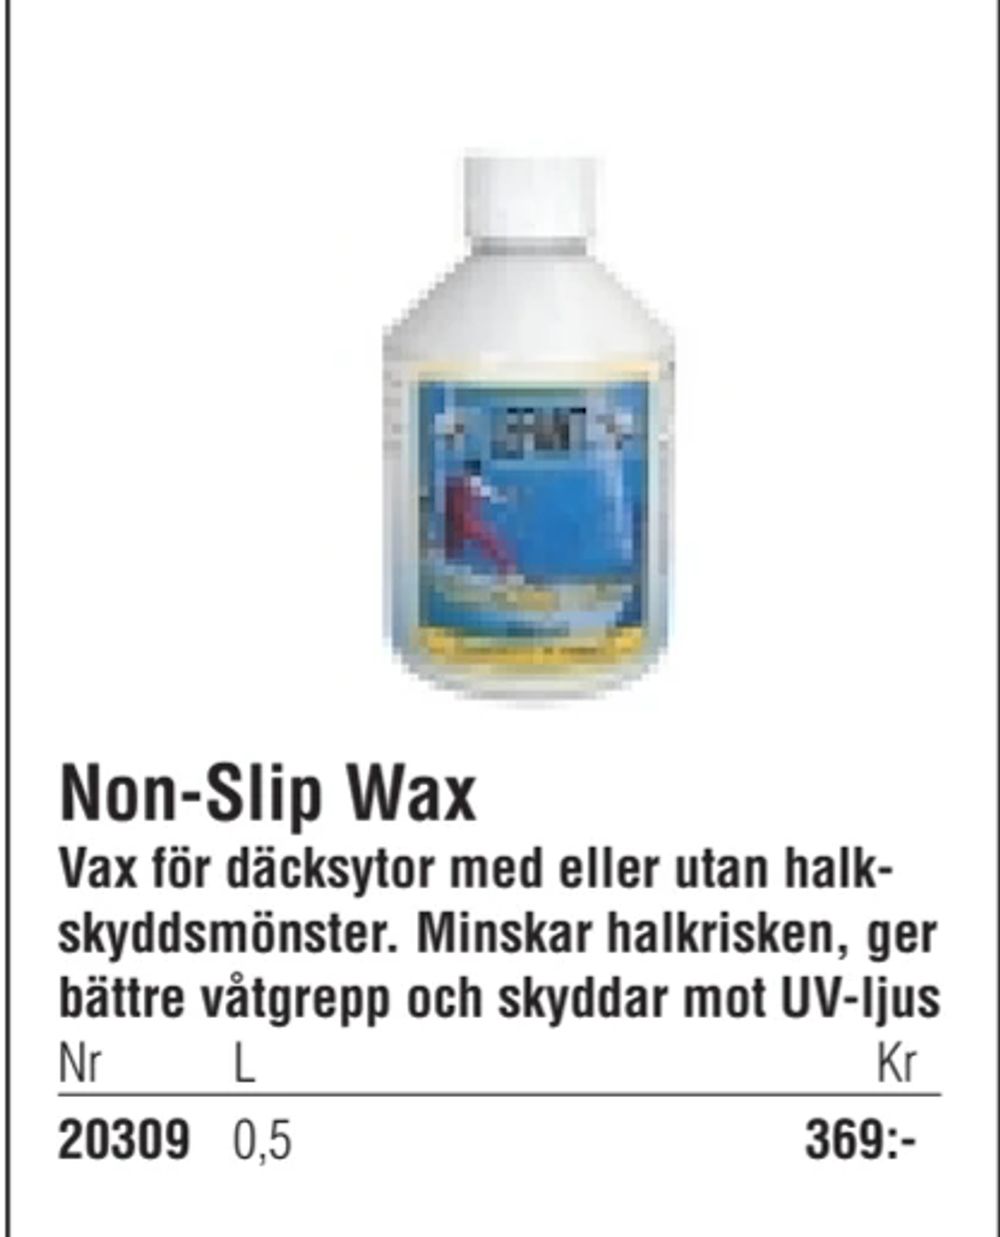 Erbjudanden på Non-Slip Wax från Erlandsons Brygga för 369 kr